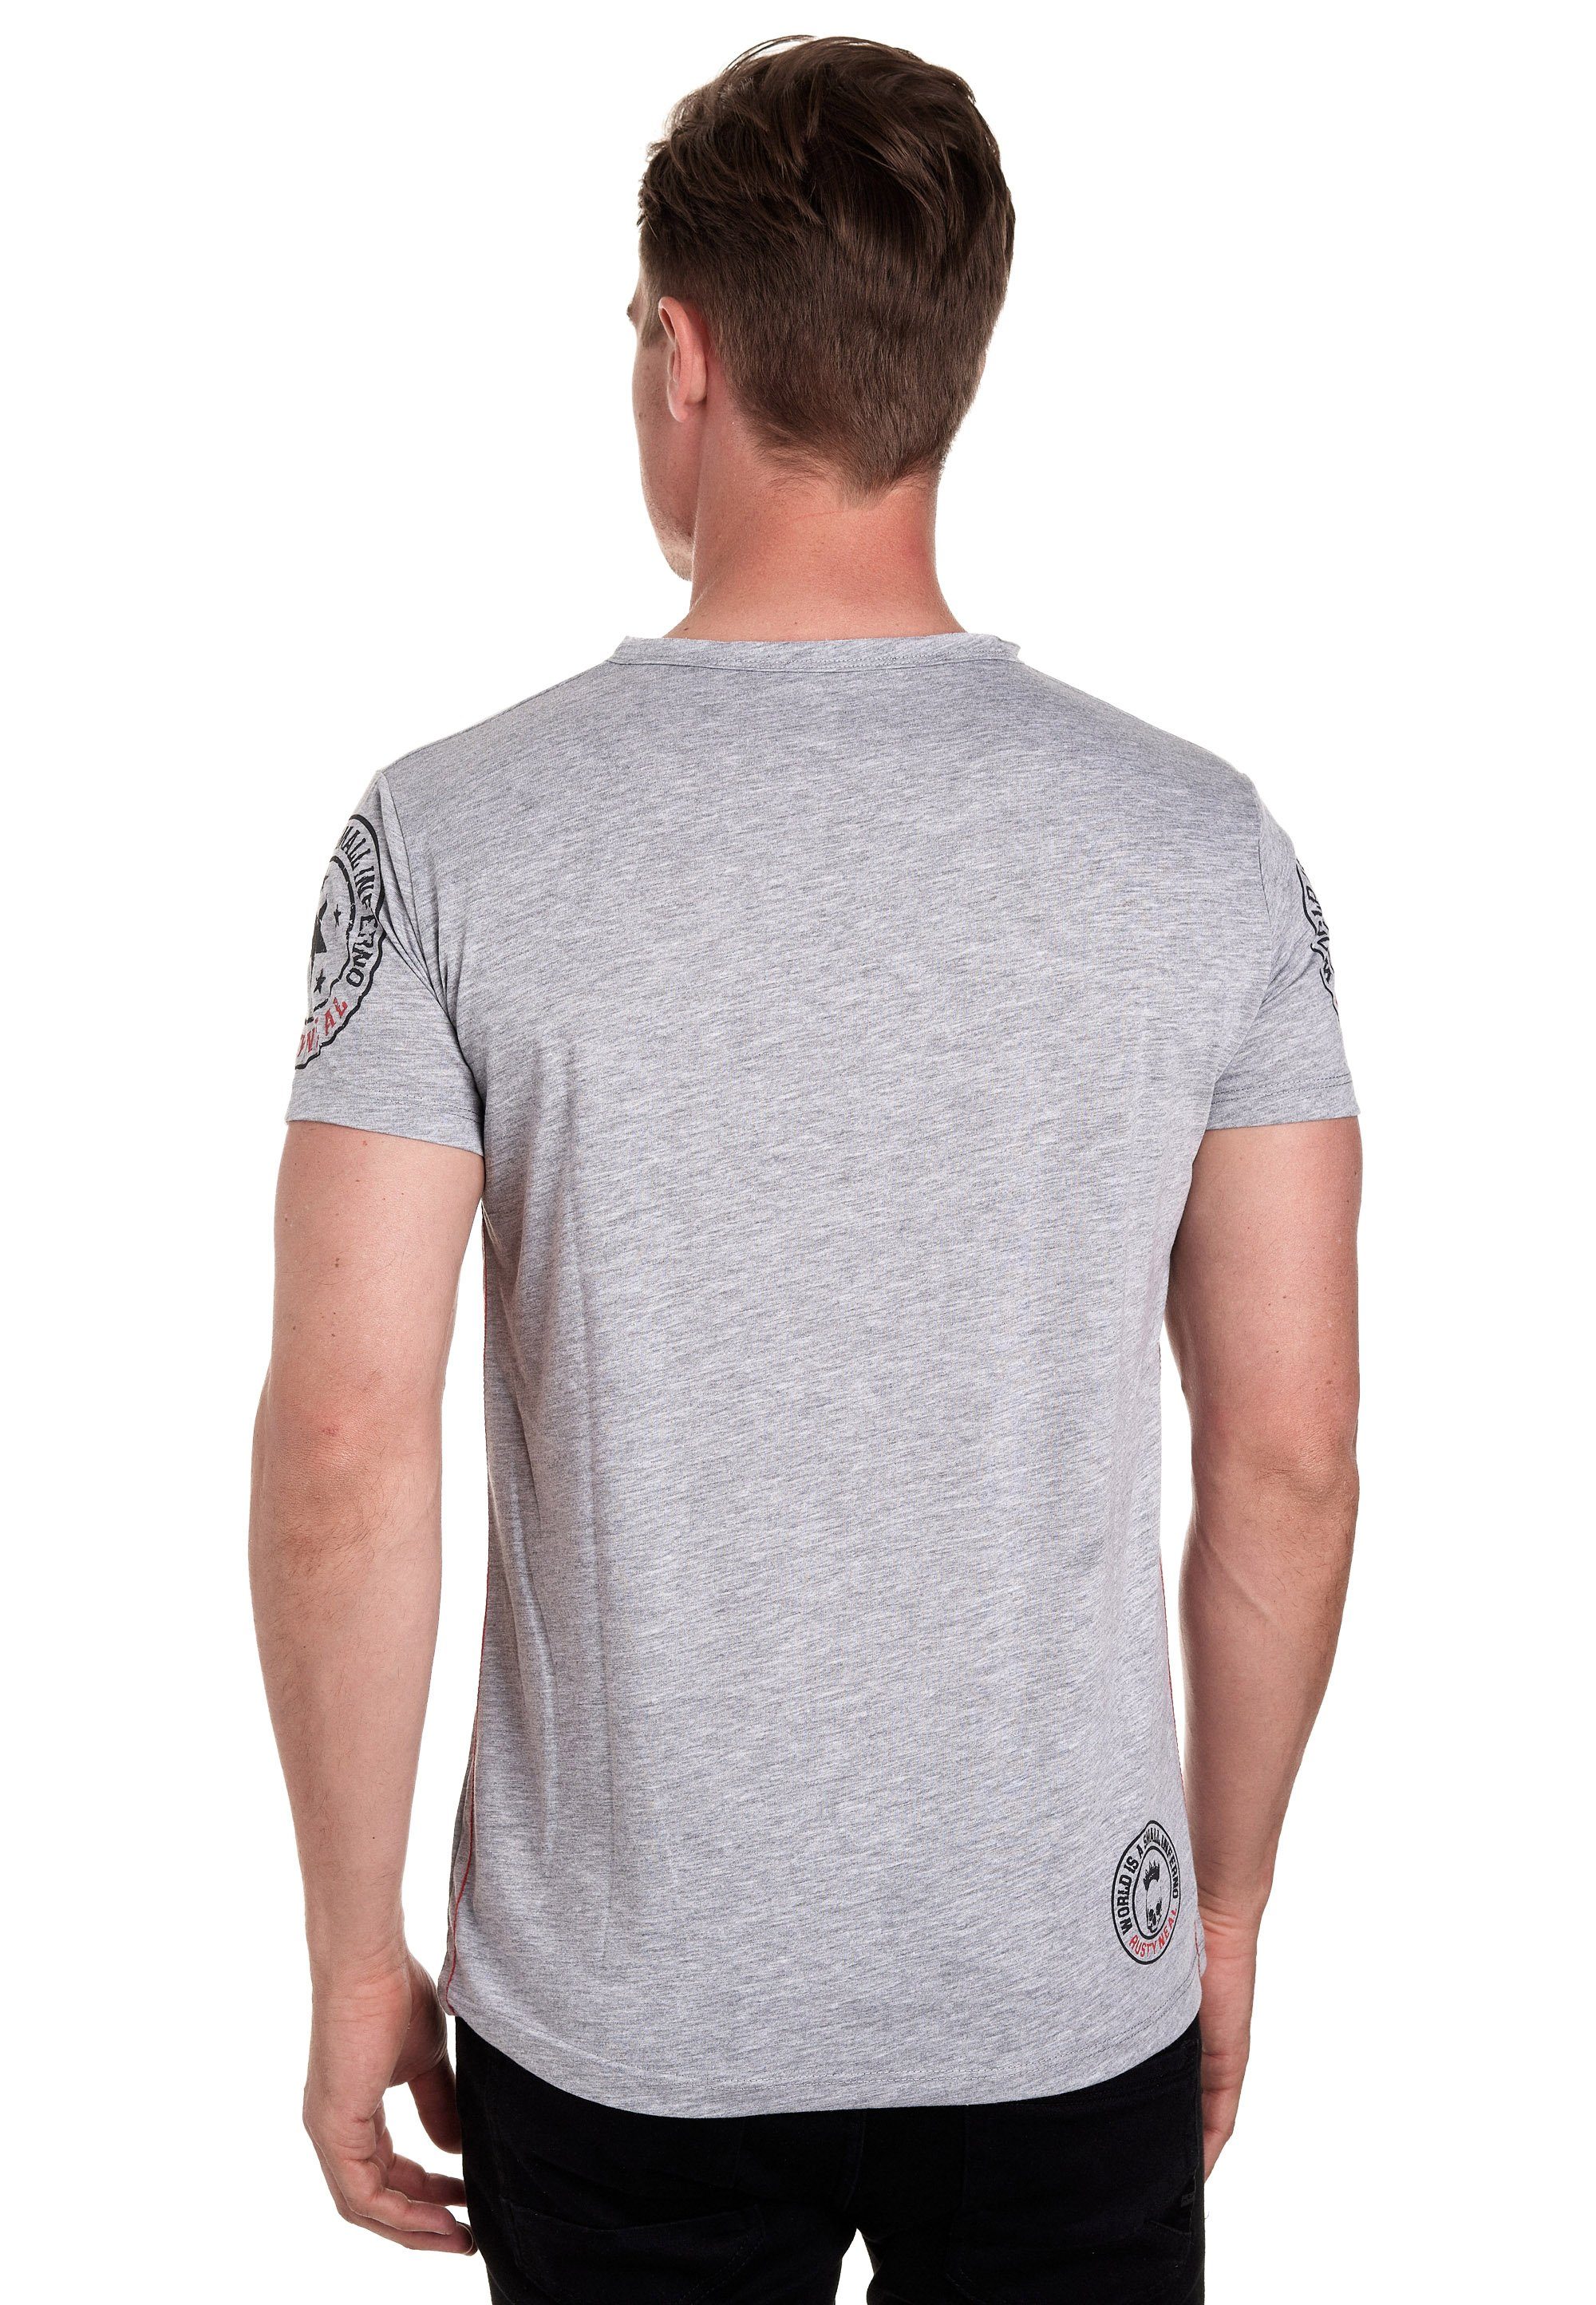 Rusty Neal T-Shirt Knopfleiste mit grau seitlicher